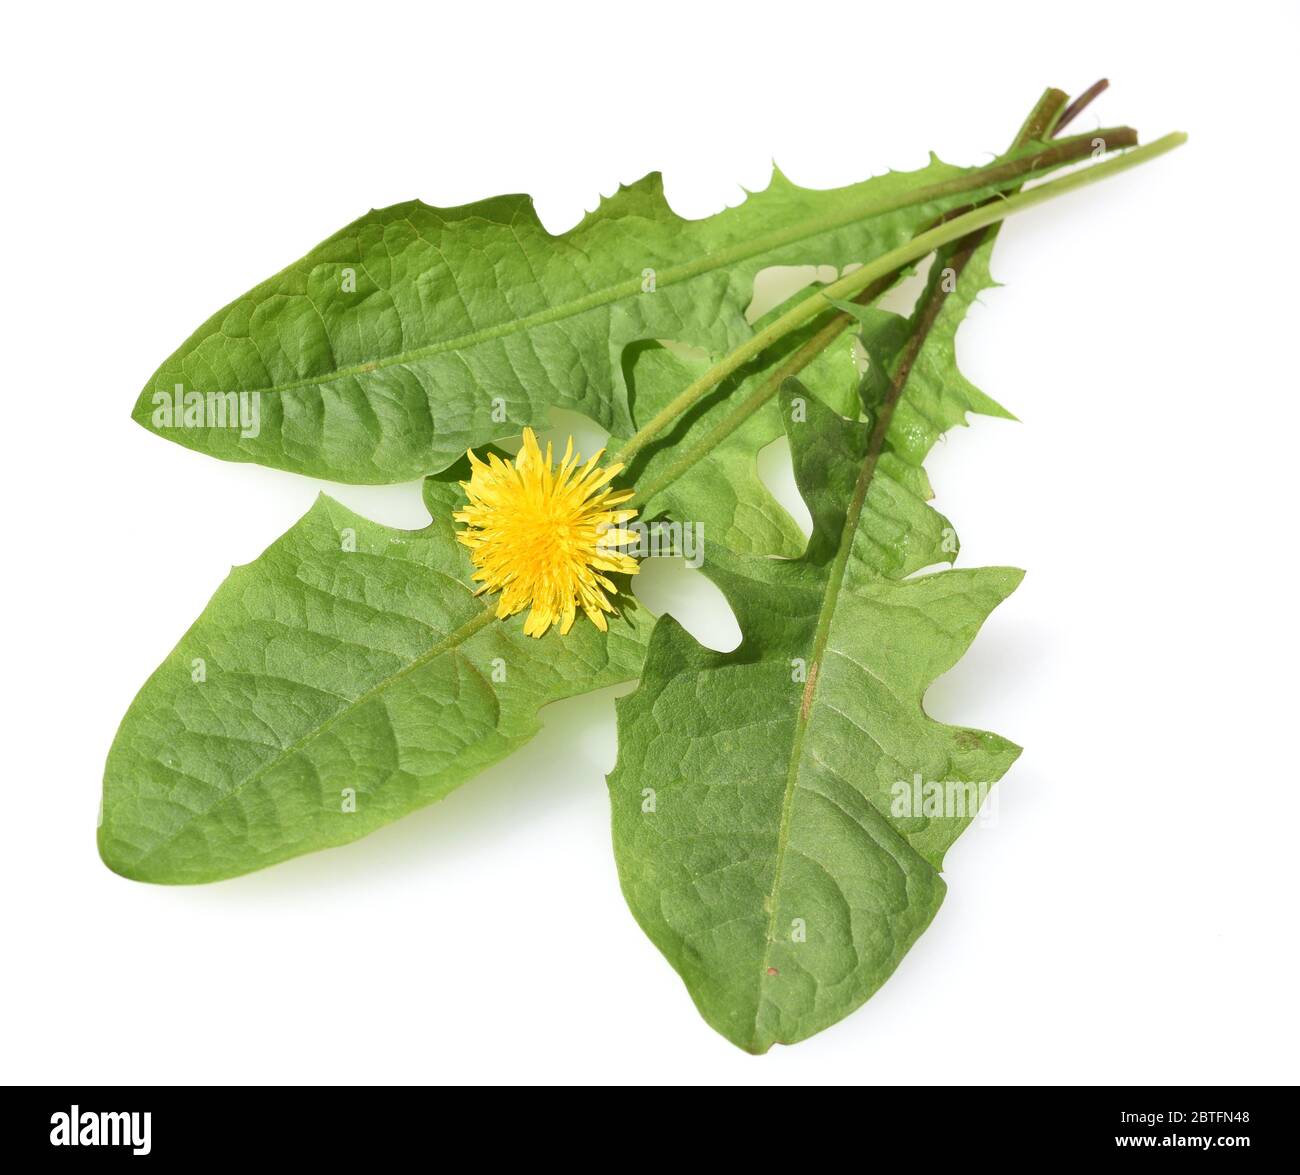 Loewenzahn, Taraxacum officinale als Mauerbluemchen, ist eine  Pionierpflanze und Ueberlebungskuenstler die auch Schotterwegen gedeihen kann. Loewenza Stock Photo